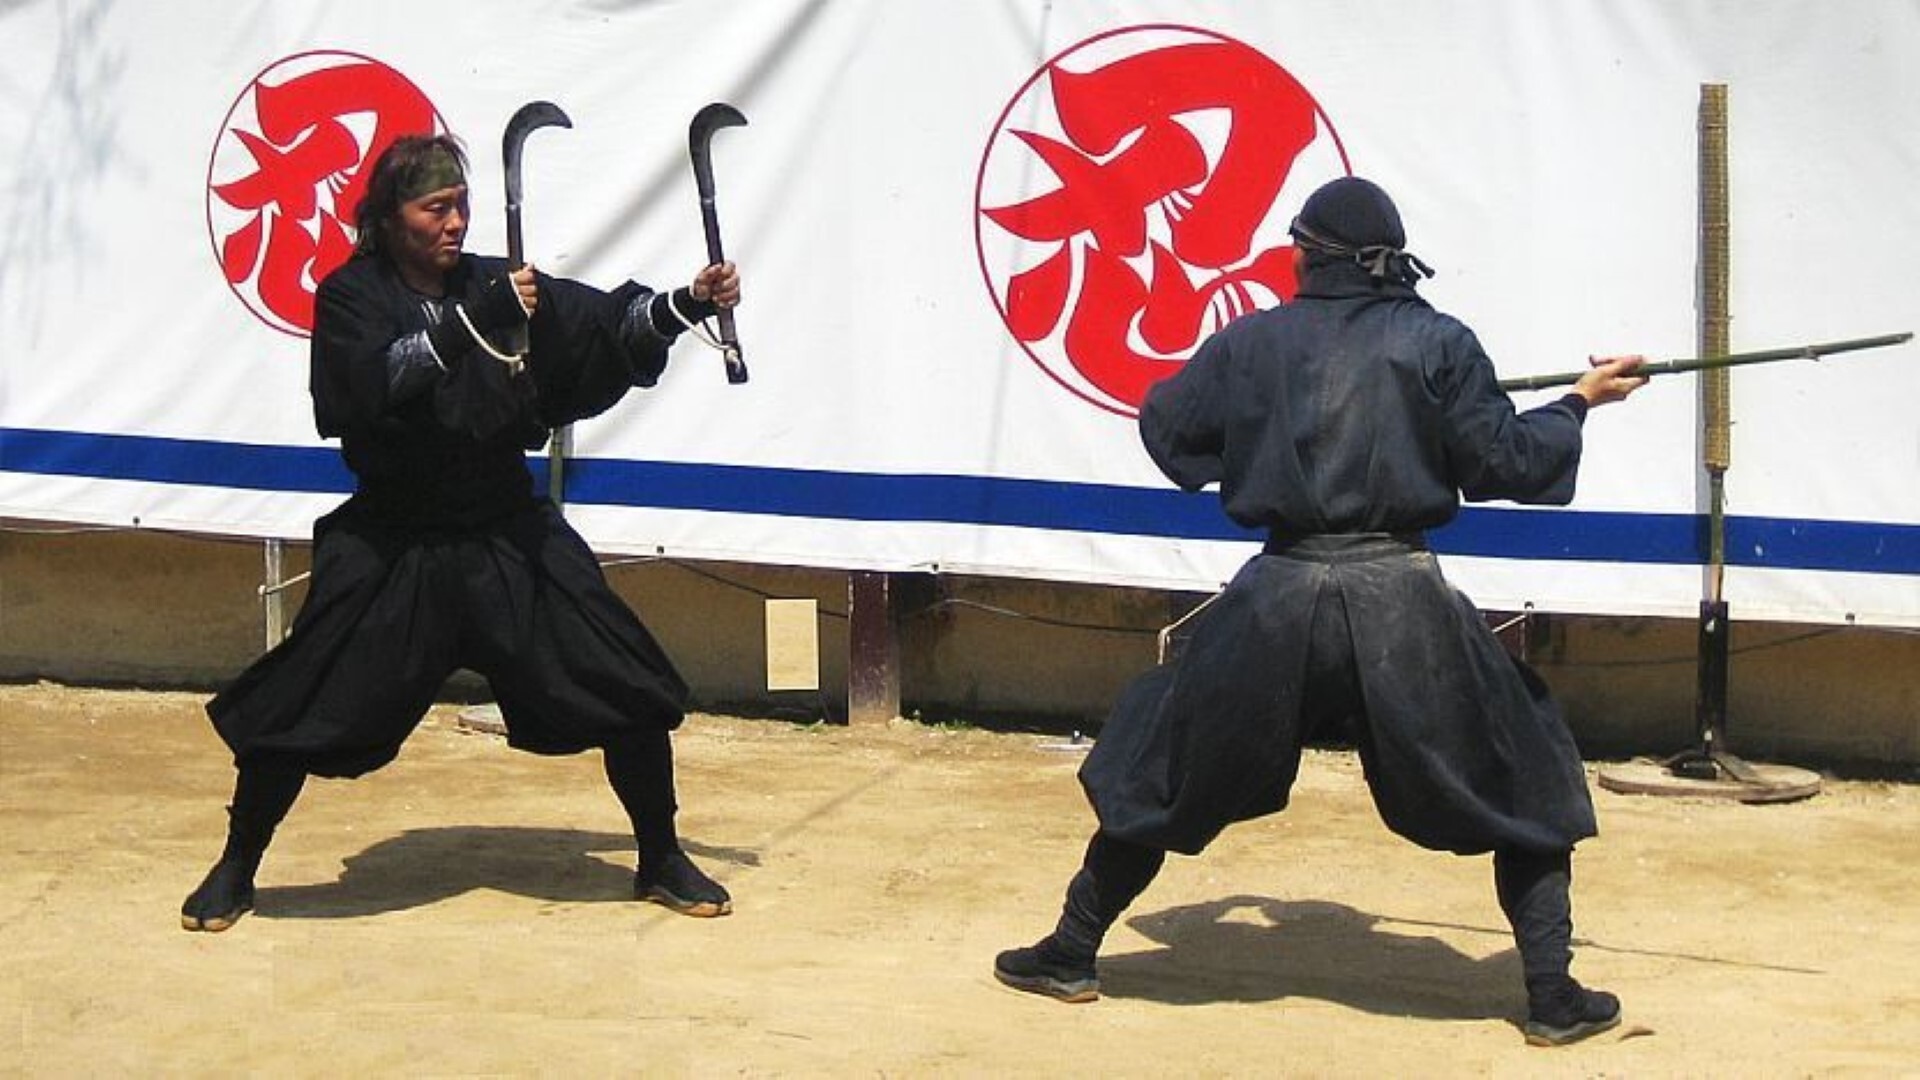 Huyền thoại về những ninja Nhật Bản có giống trên phim? - Ảnh 4.